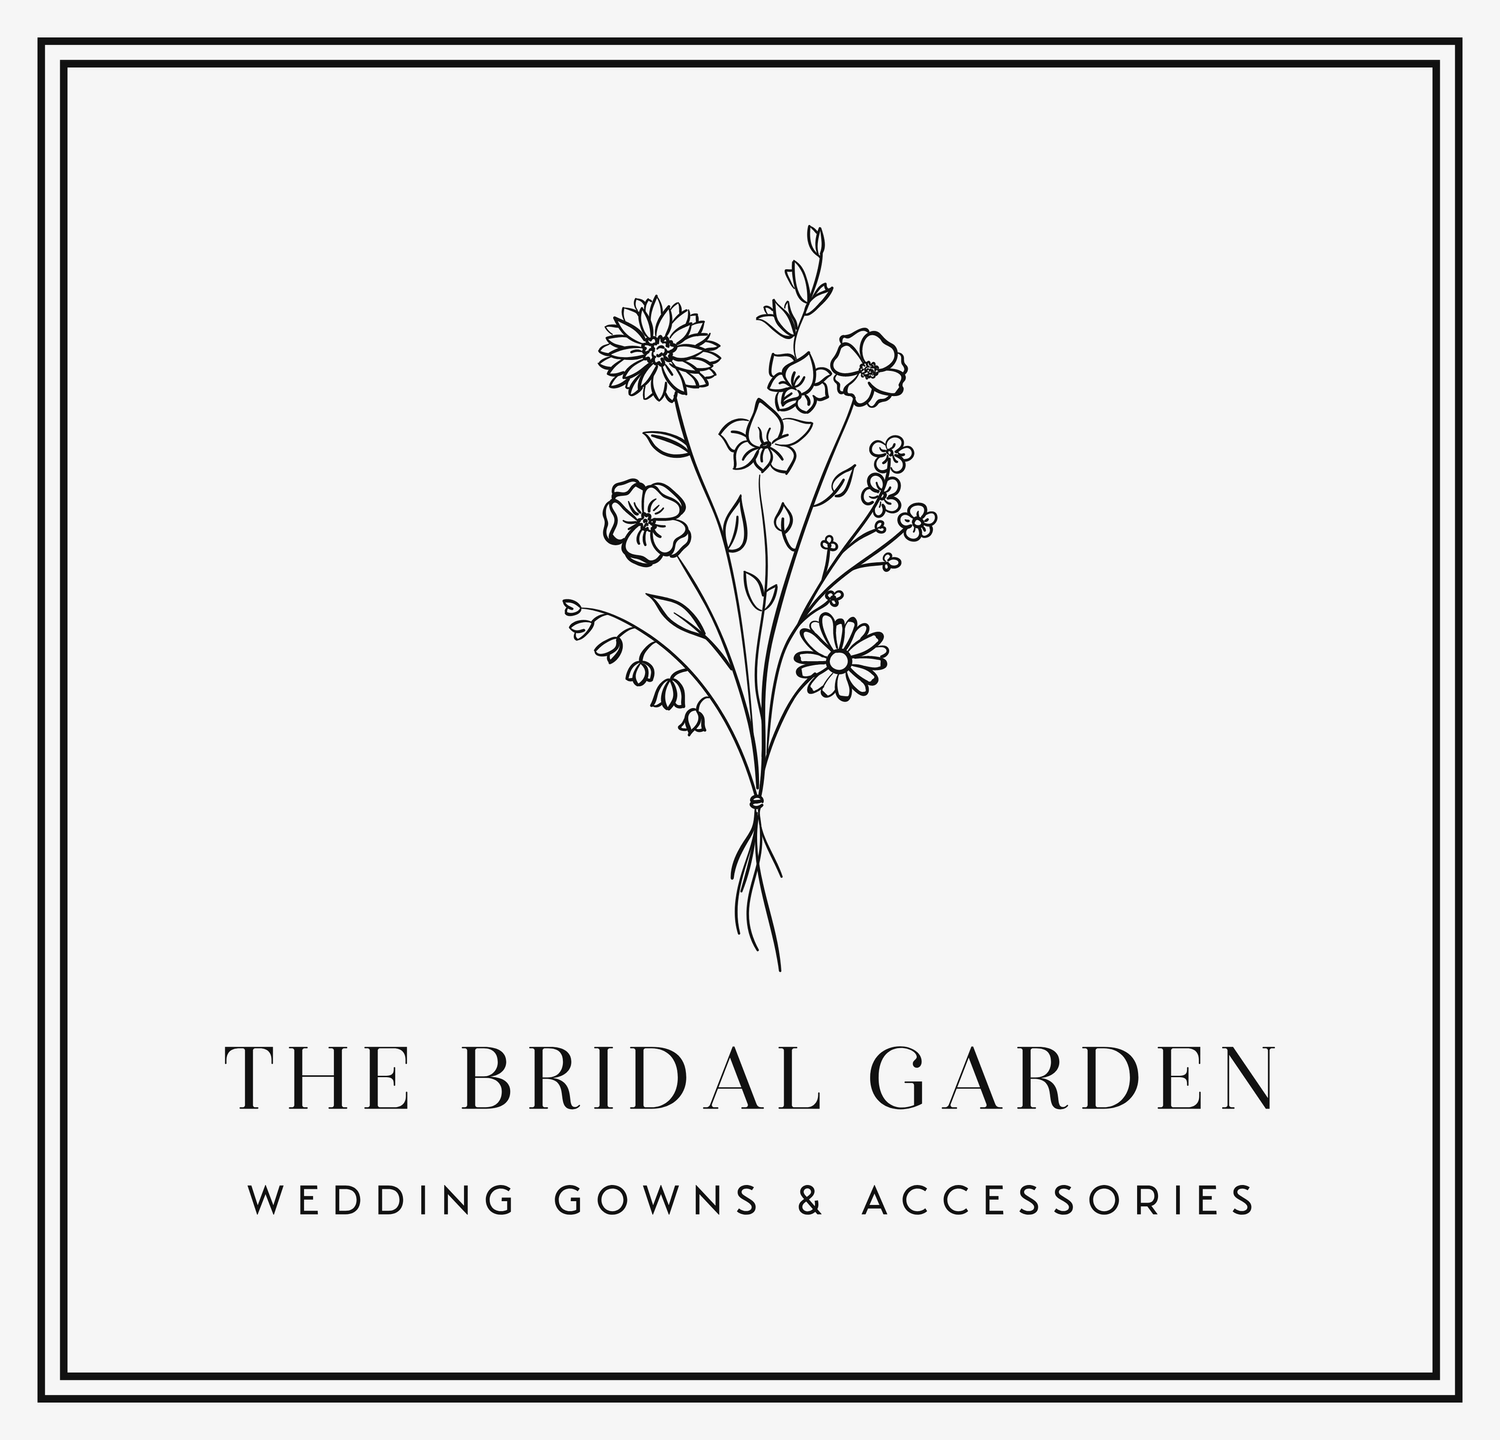 The Bridal Garden